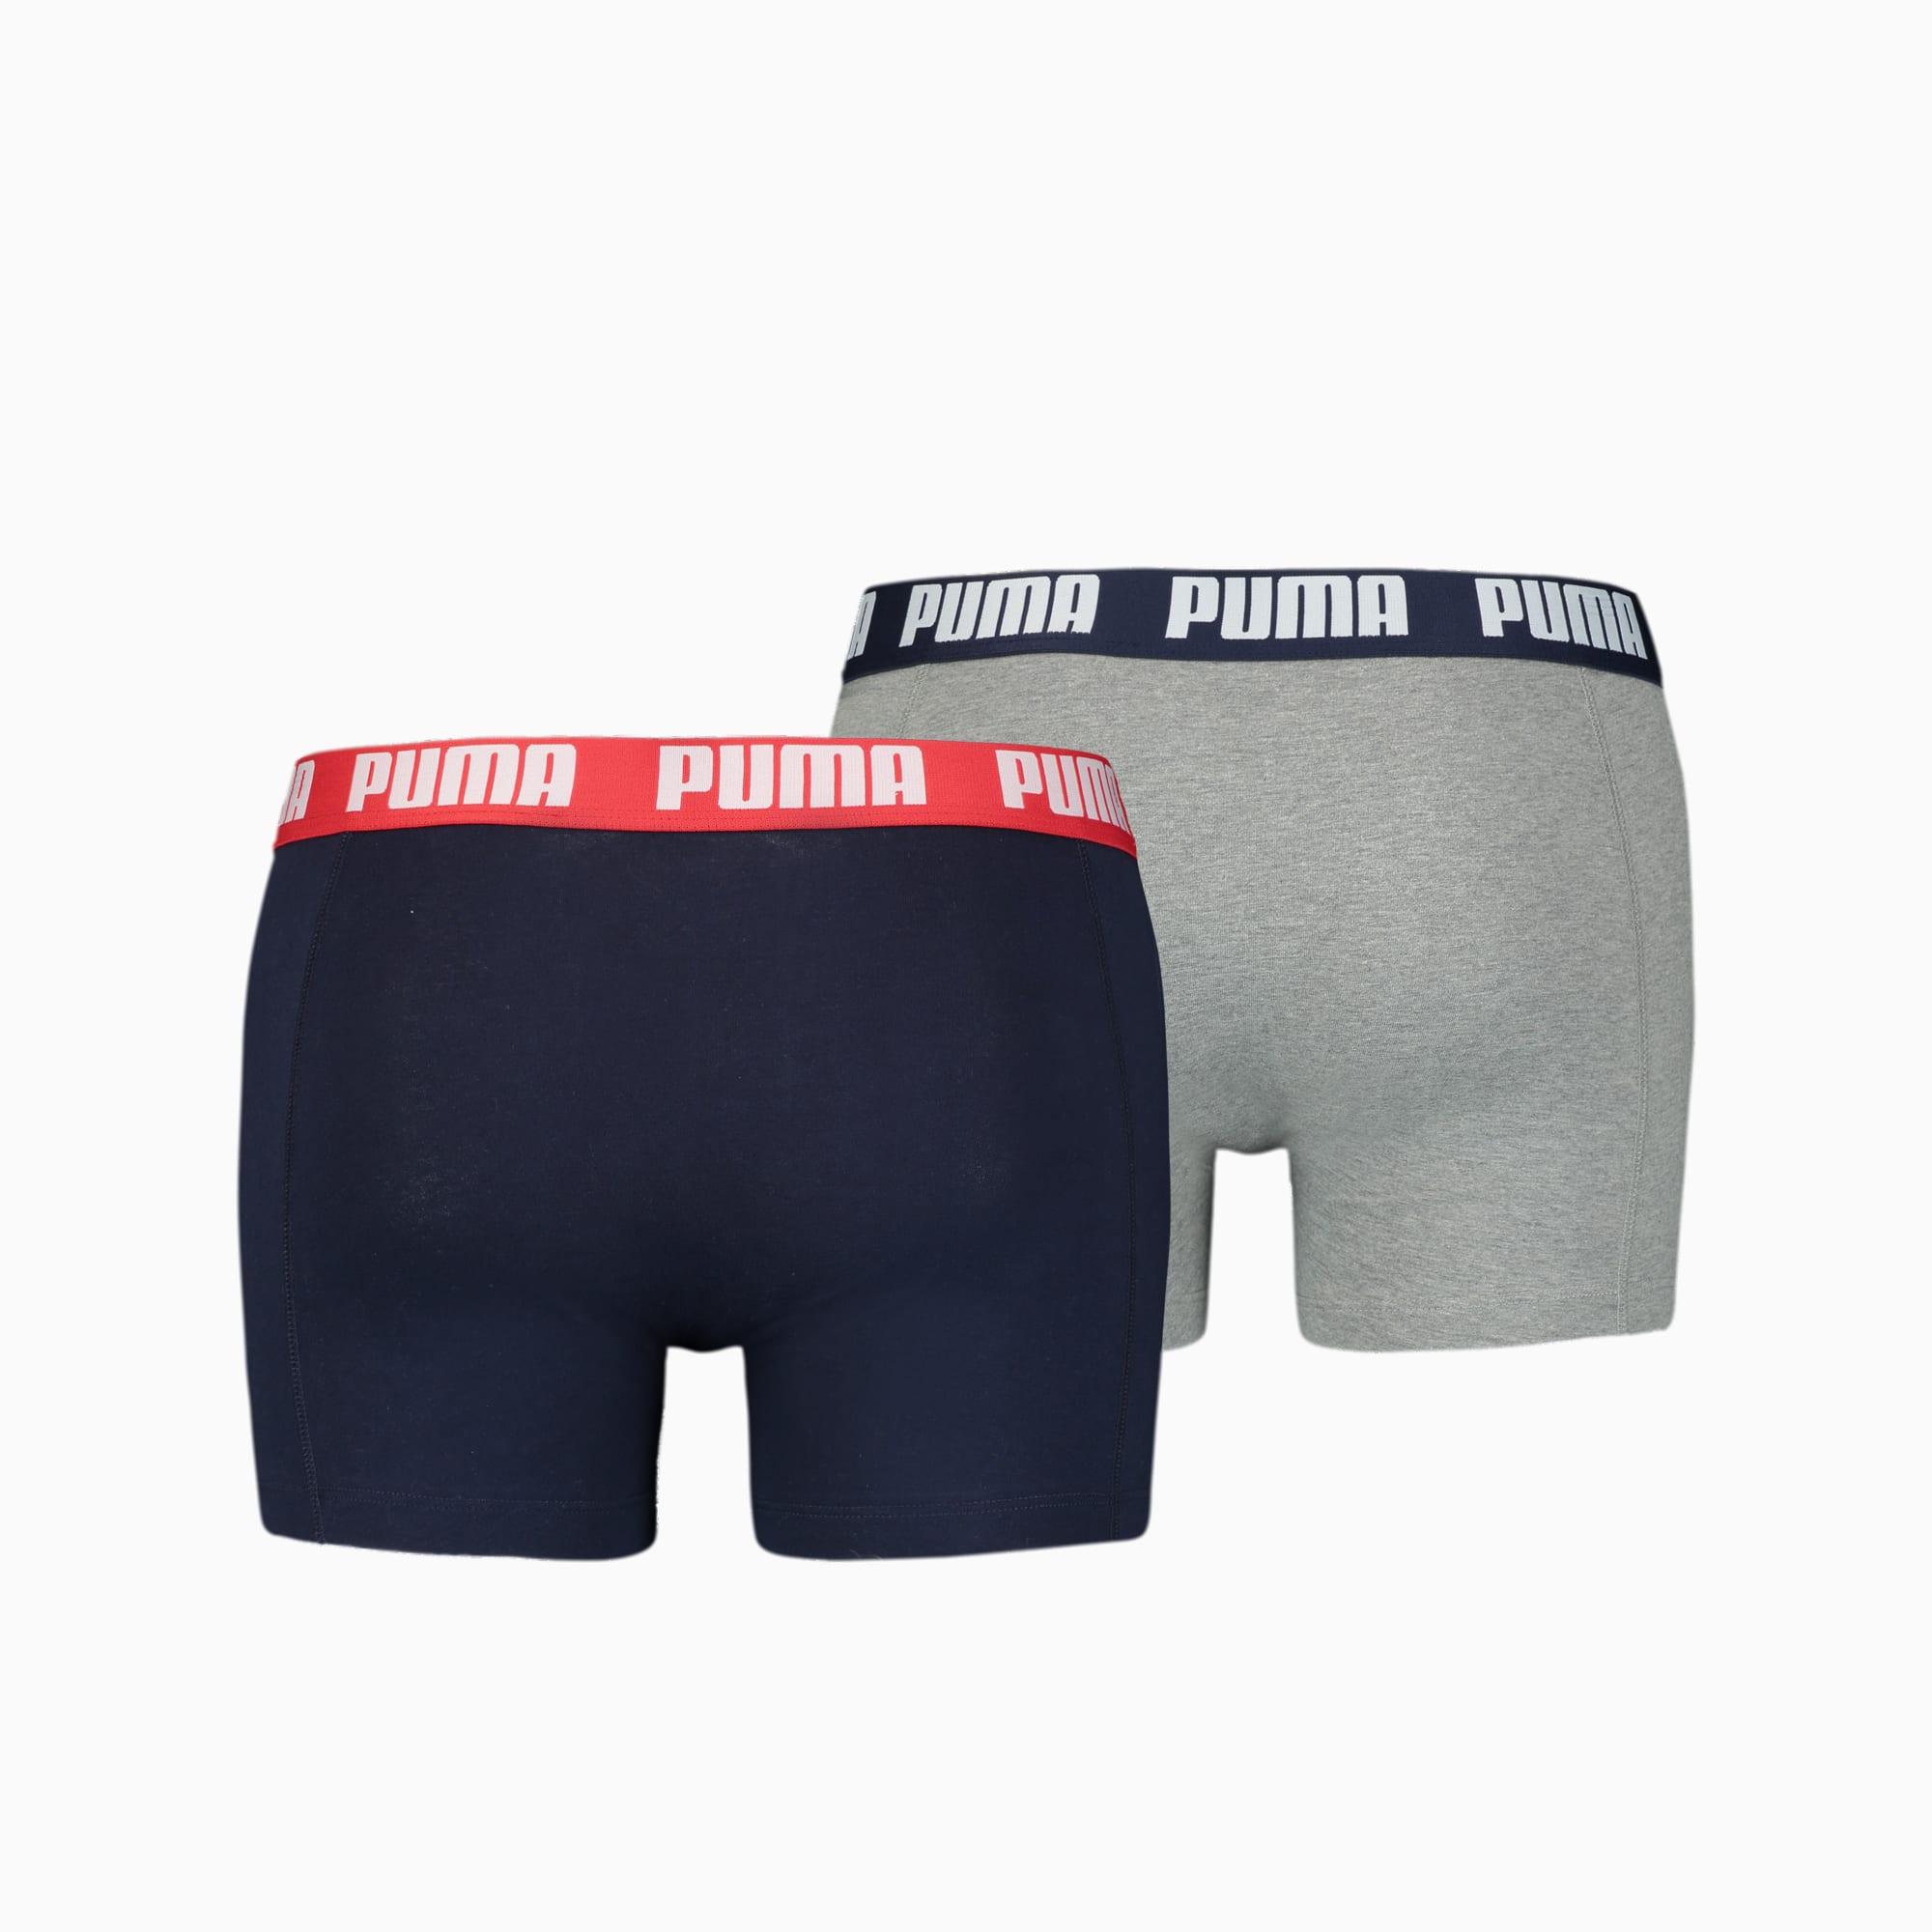 PUMA Basic Boxershorts Herren 2er-Pack, Mit Grau Melange, Grau/Blau, Größe: XL, Kleidung